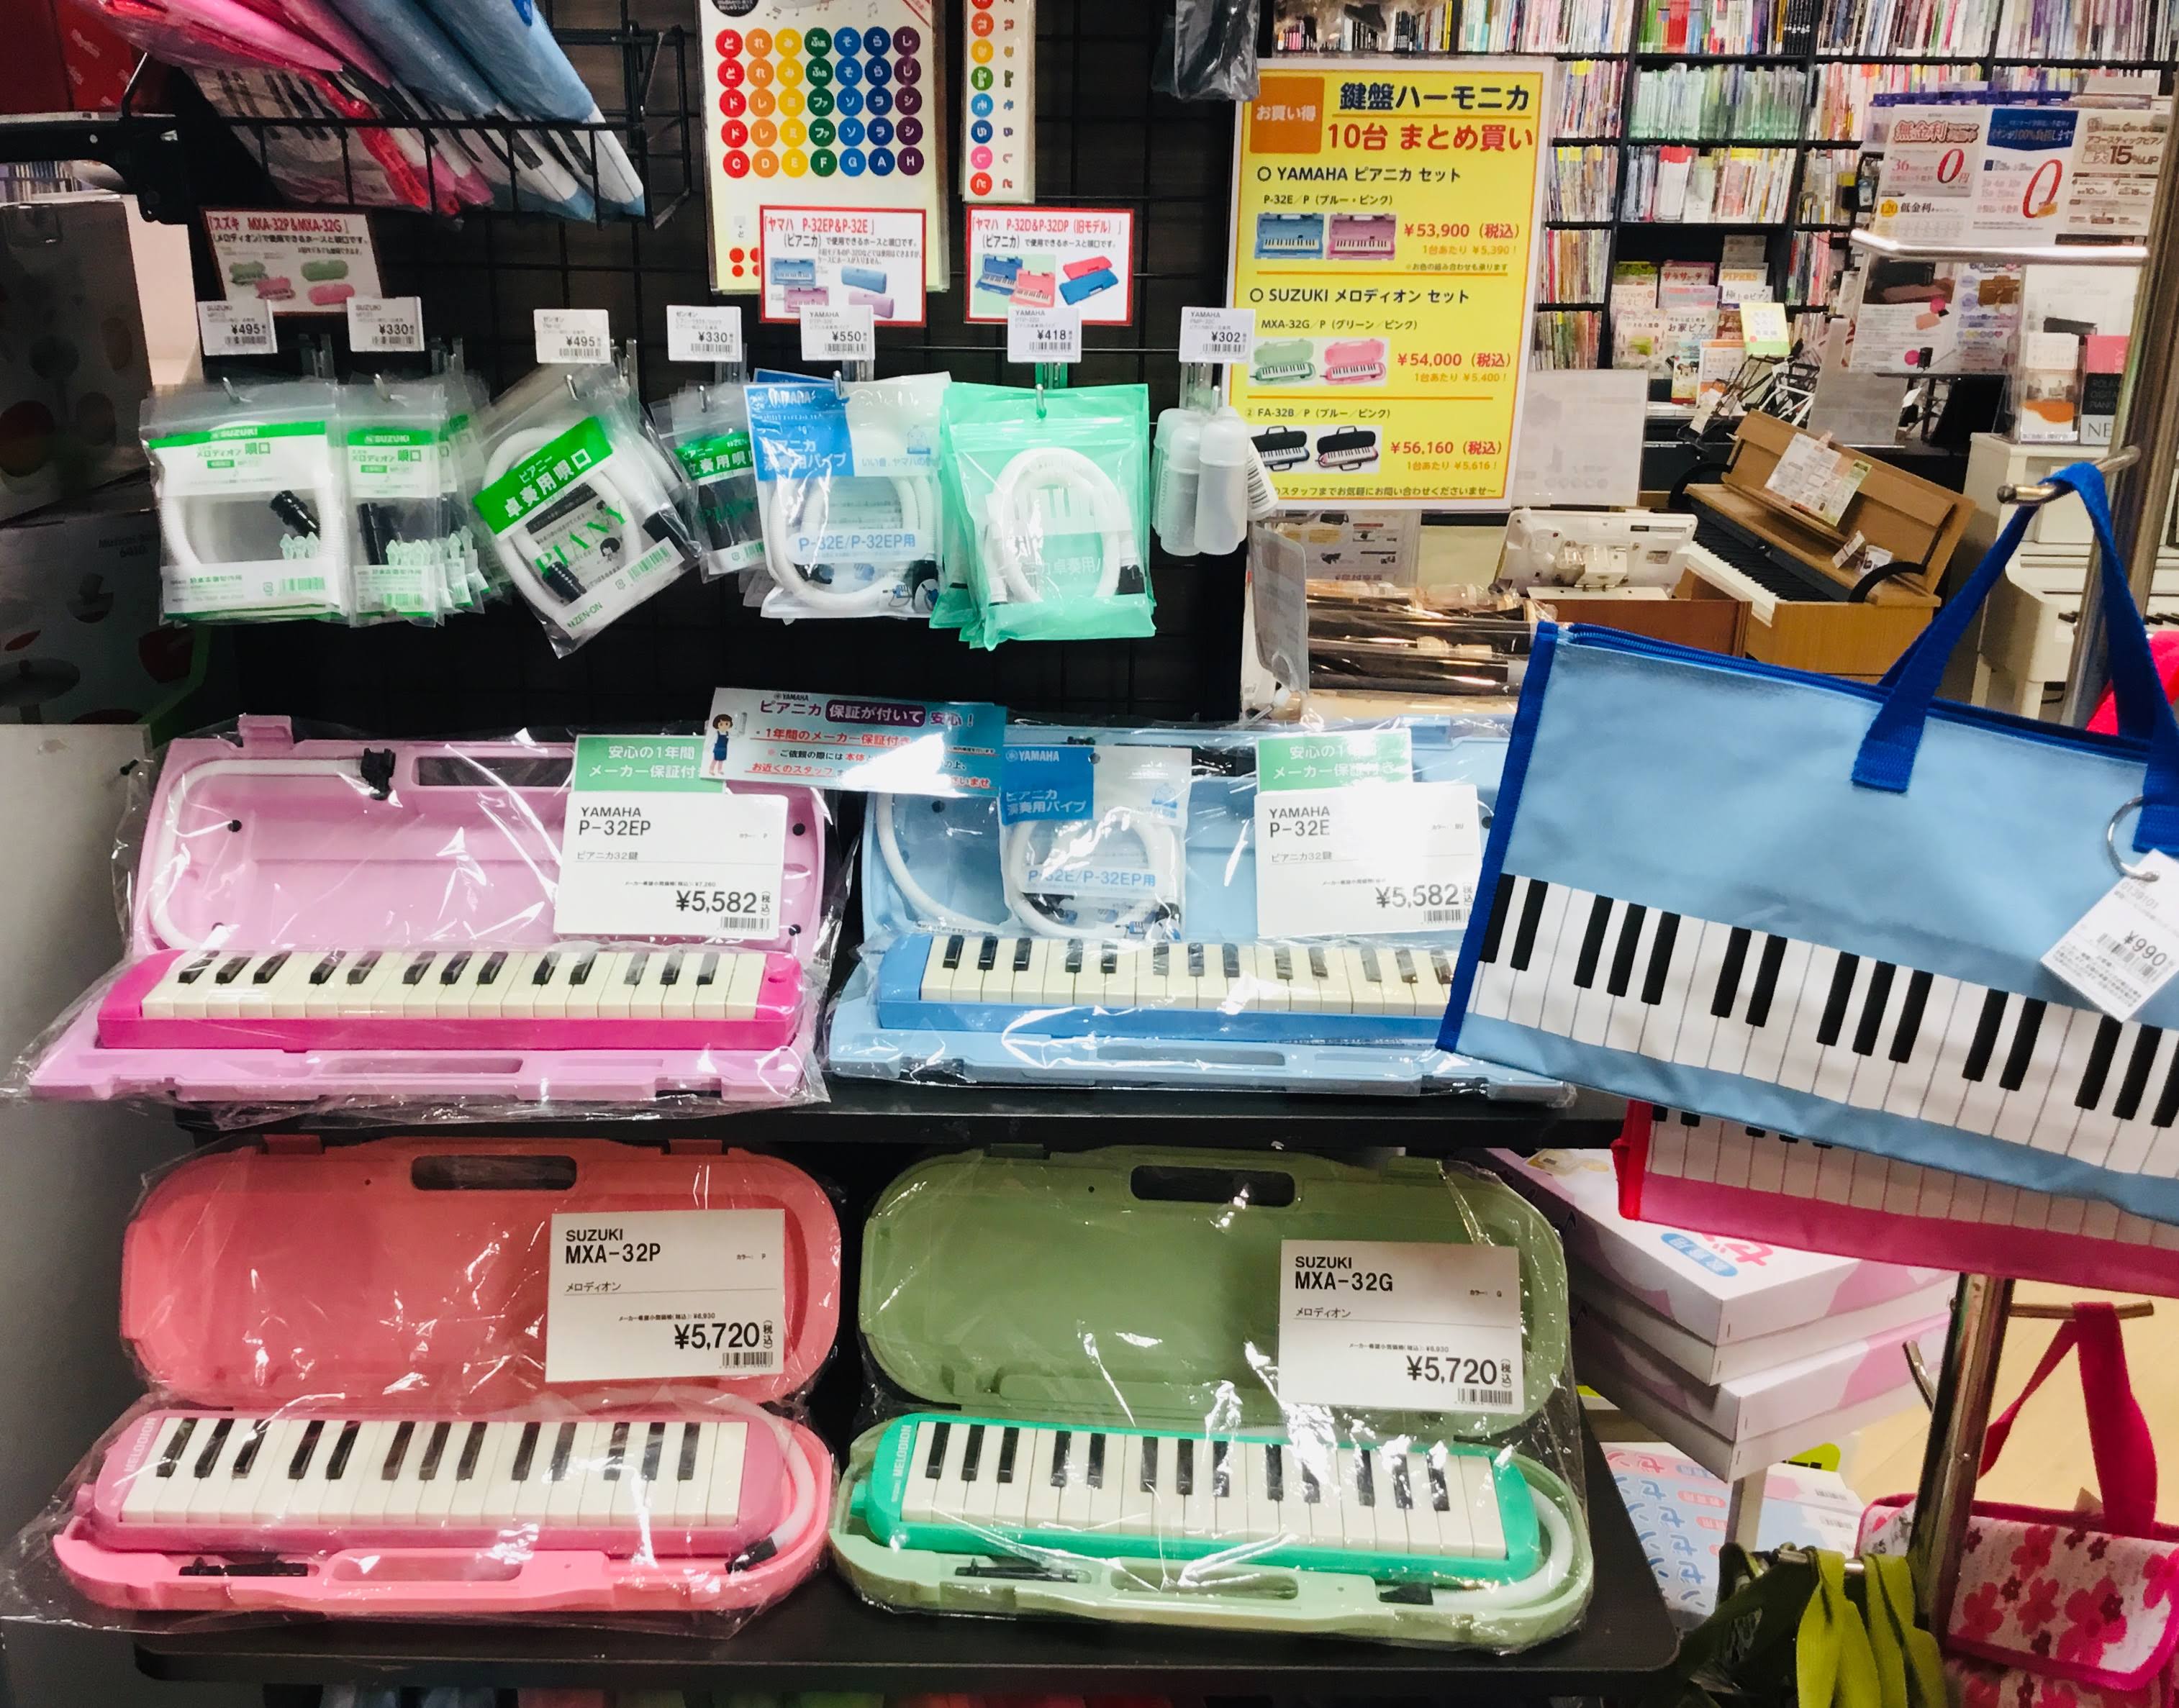 こんにちは。姫路店の青木です! ご入学・新学期の準備を！という事で、今回は[!!鍵盤ハーモニカ!!]について当店で揃える商品をご紹介いたします。 ・鍵盤ハーモニカ付属品編についてはこちら→[https://www.shimamura.co.jp/shop/himeji/product/2020032 […]